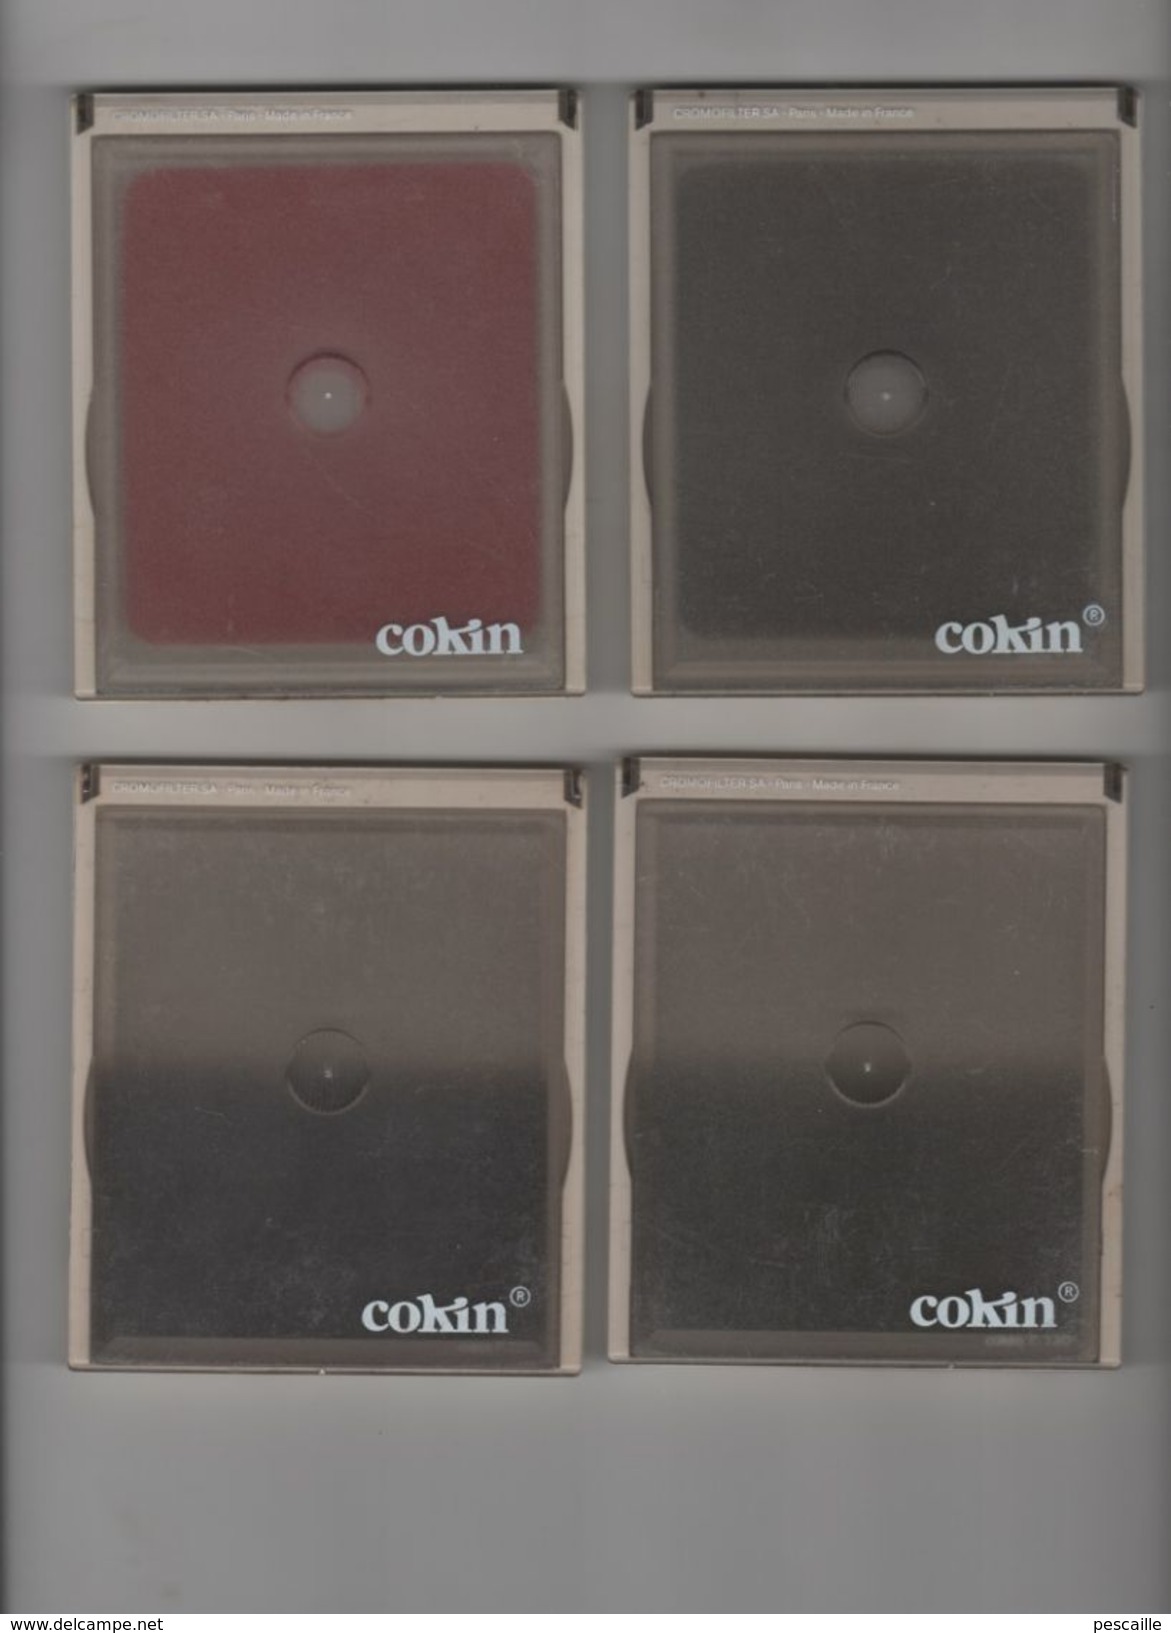 LOT DE 9 FILTRES COKIN CARRES RECTANGULAIRES ROND / SPOT / COLORS /DIFFRACTOR / P 021 / P 027 / P 030 / P 041 / P 062 / - Matériel & Accessoires